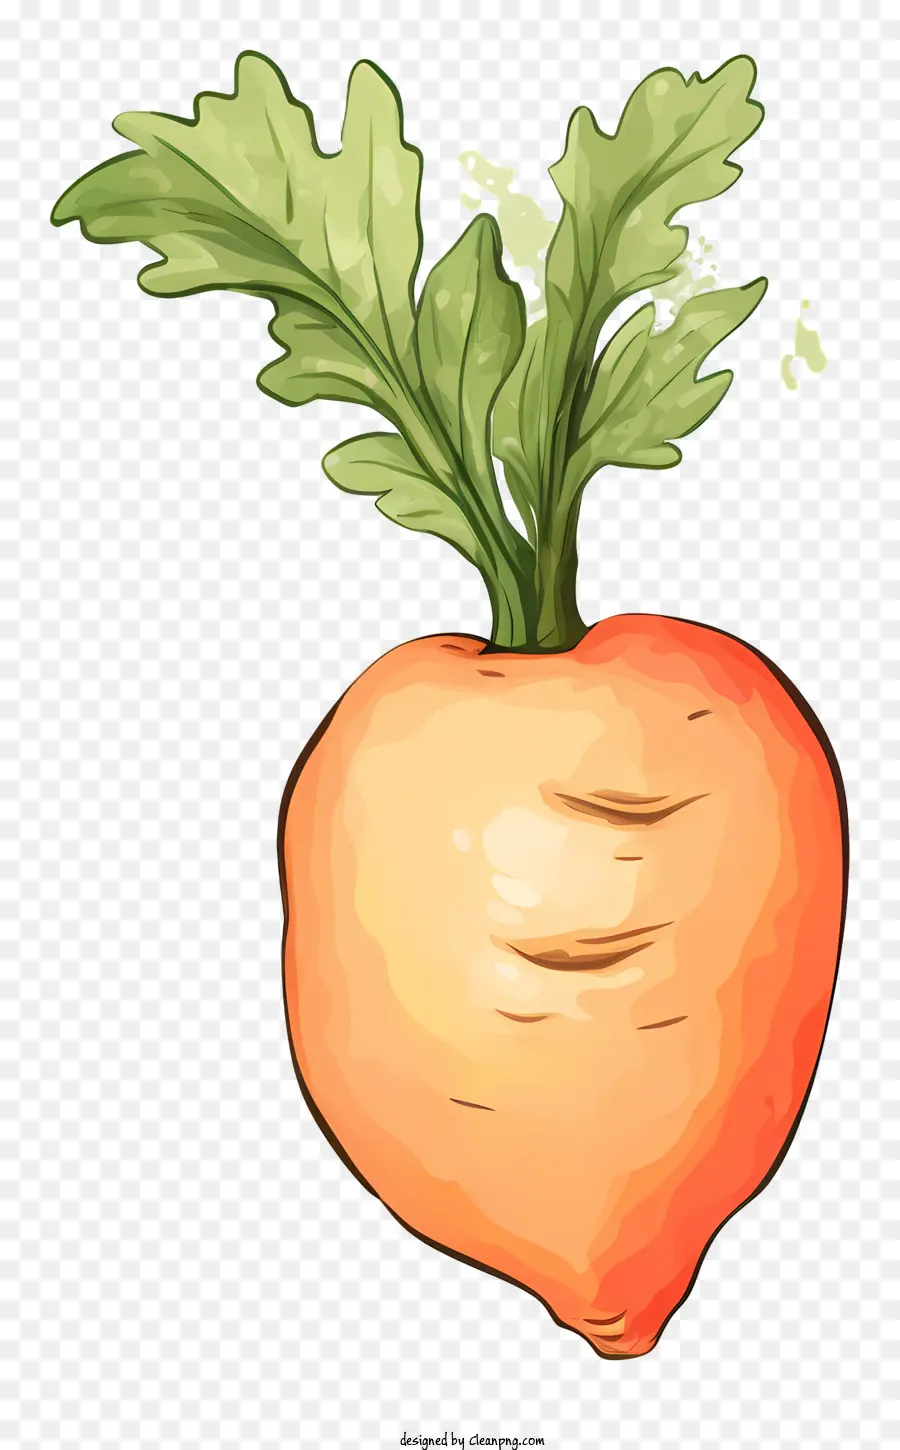 Karottenernährung Karotte Vorteile Vitamin-a-faserreicher Lebensmittel Gesunde Lebensmittelauswahl - Karotte: Wurzelgemüse, weißer Stiel, Orangenwurzel, gesundes, leckeres Essen